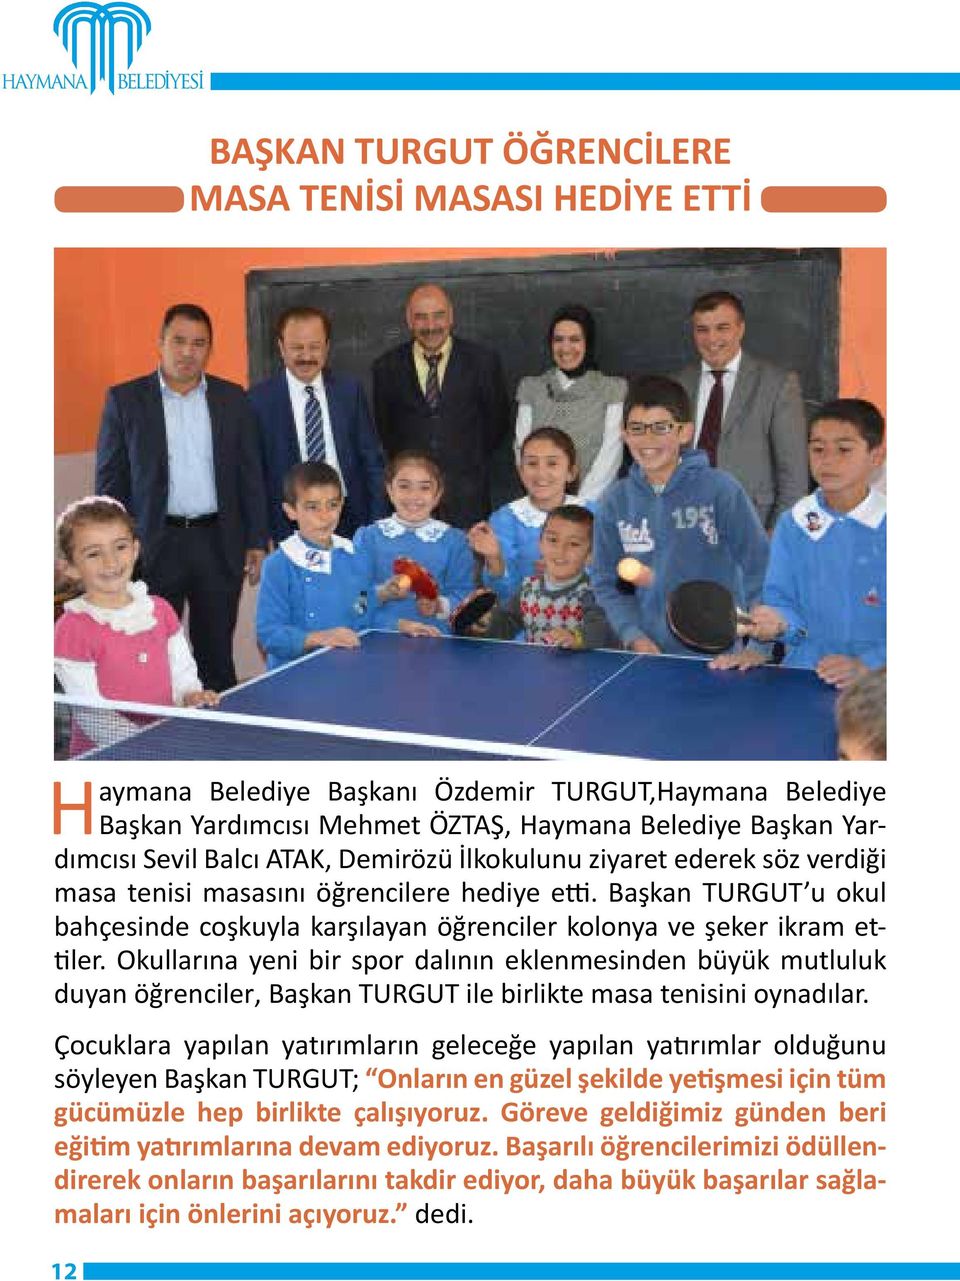 Okullarına yeni bir spor dalının eklenmesinden büyük mutluluk duyan öğrenciler, Başkan TURGUT ile birlikte masa tenisini oynadılar.